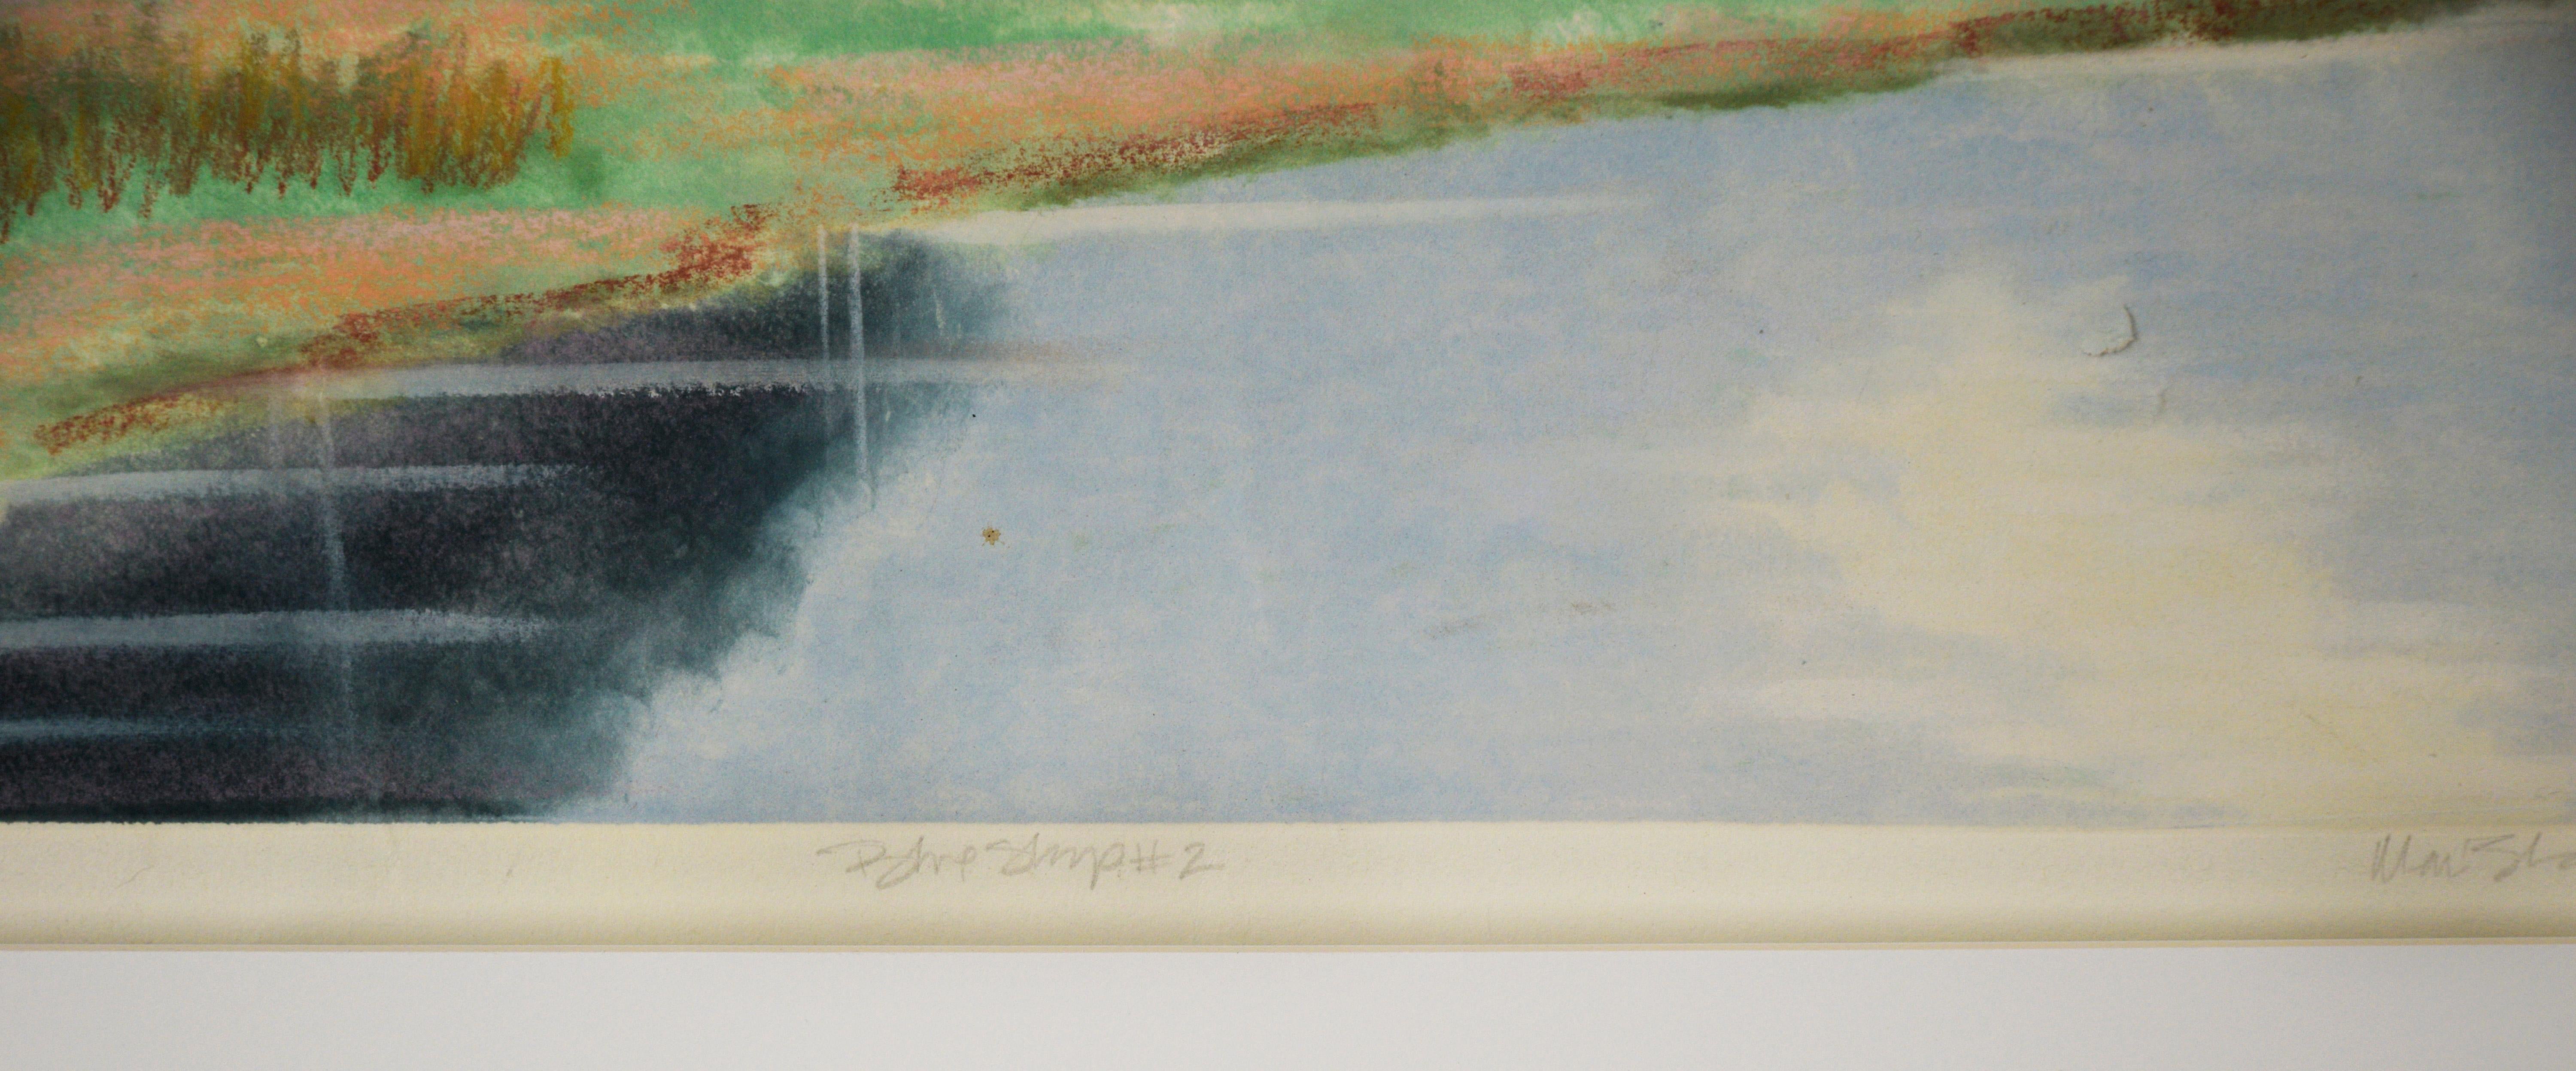 Beyond The Waterline de Mari Elsa Giddings (américaine, née en 1959)

Vintage monotype original aquarelle peinture d'un lac serein entouré d'arbres vibrants de vert. Le lac est calme, les ombres des arbres scintillent au-dessus de lui. Il y a des